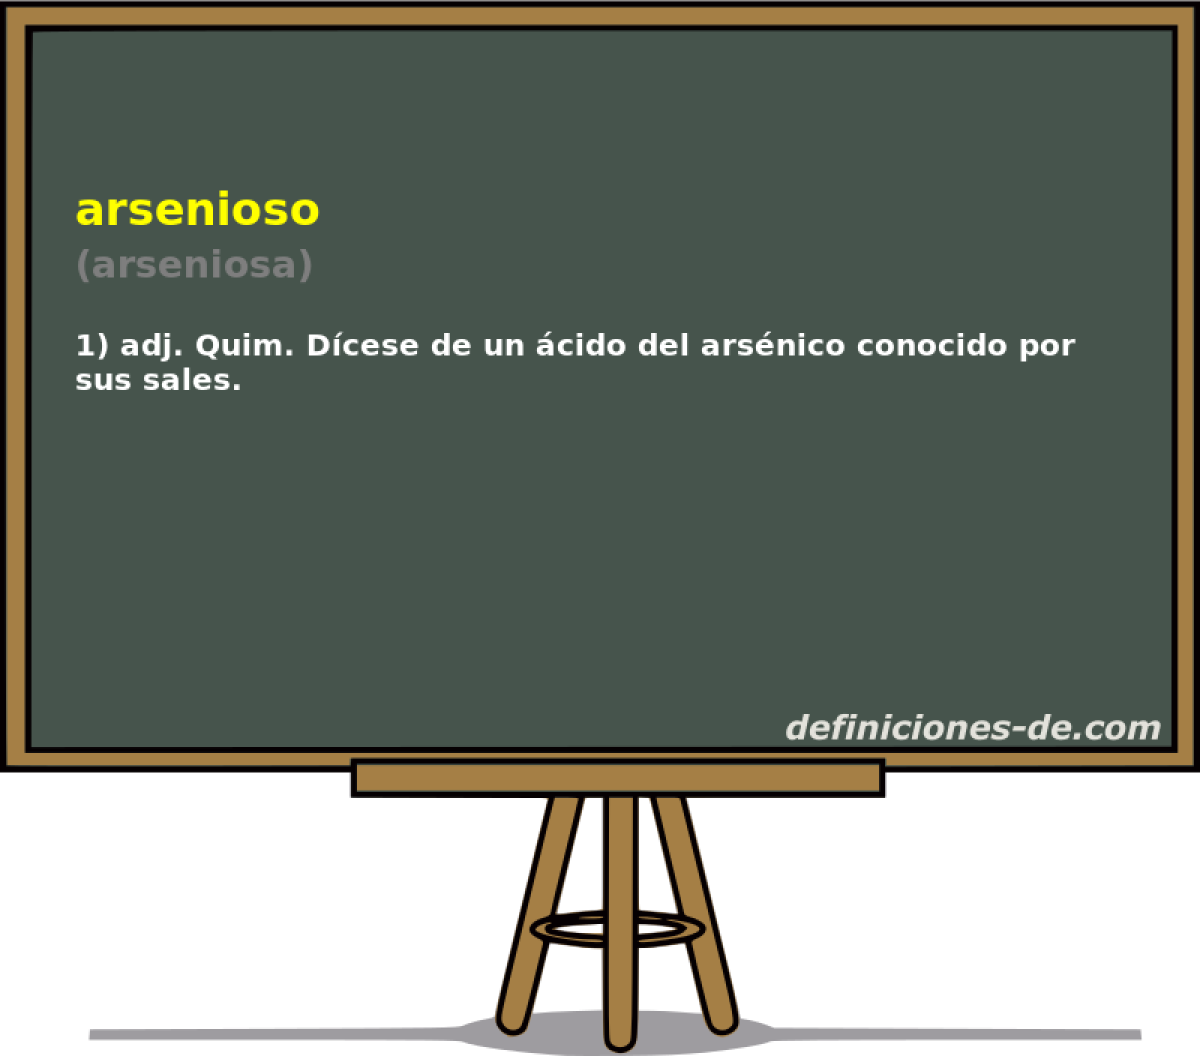 arsenioso (arseniosa)